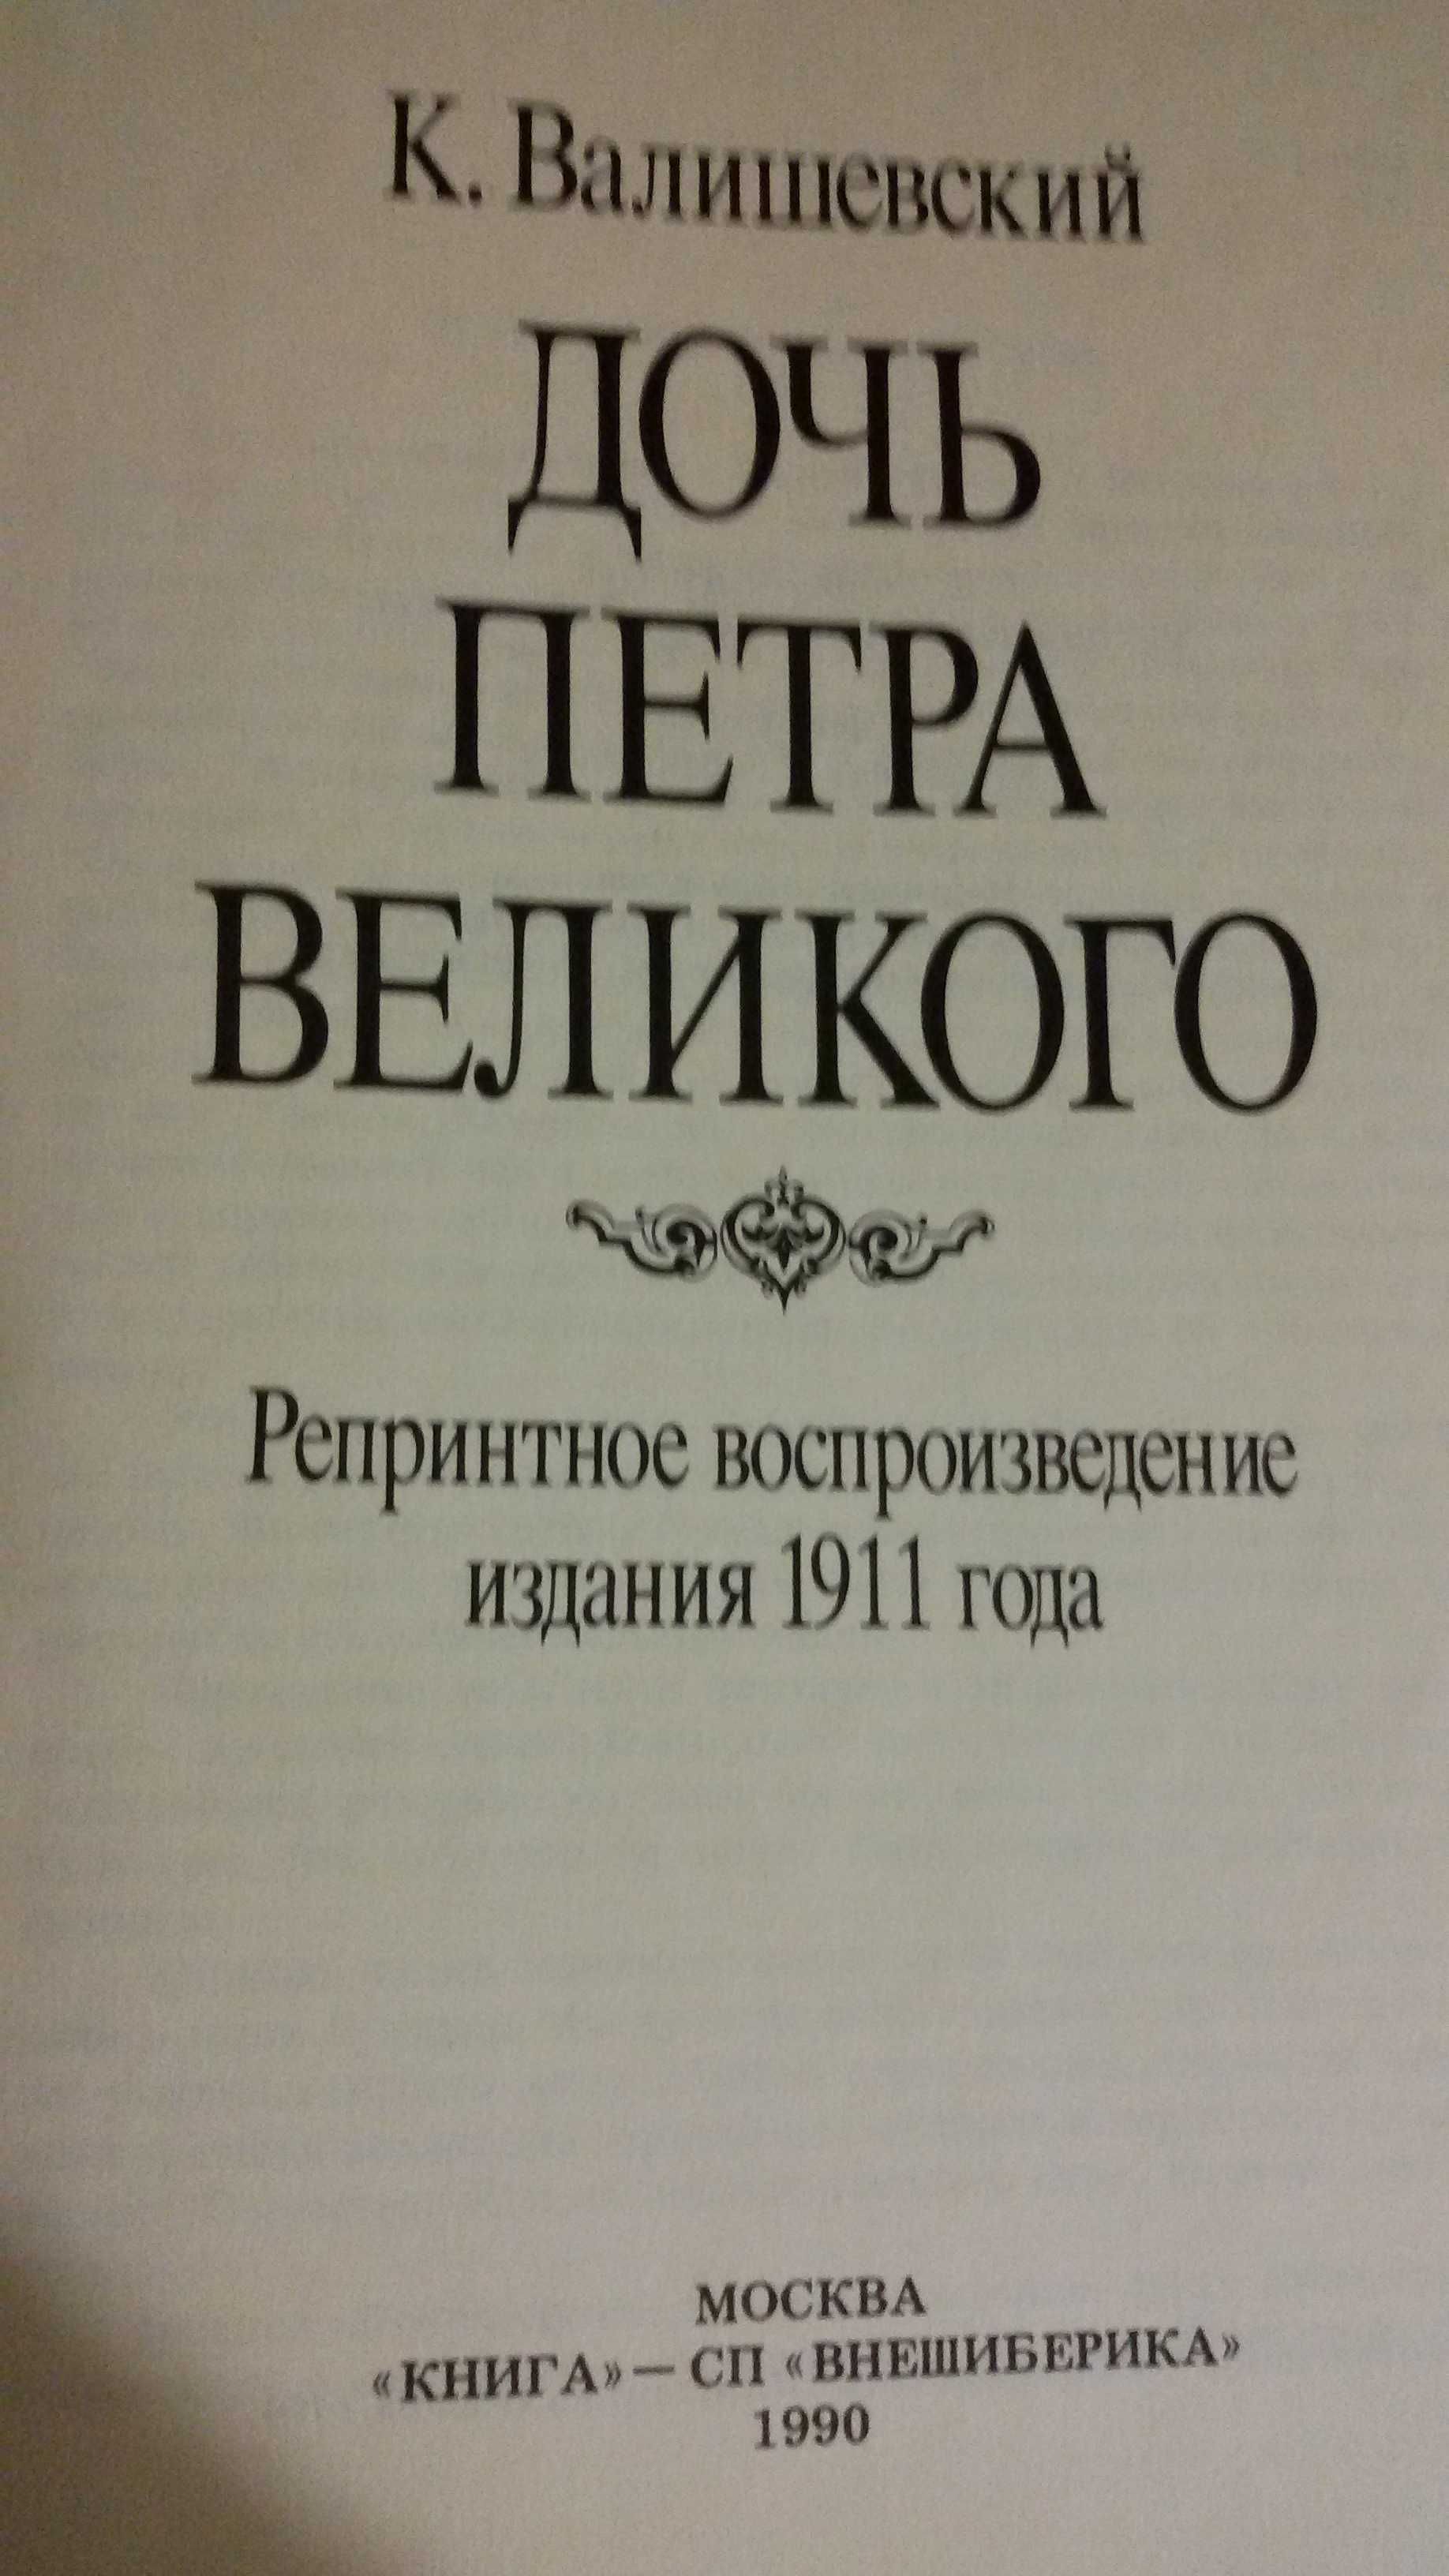 Книга Дочь Петра Великого. К.Валишевский